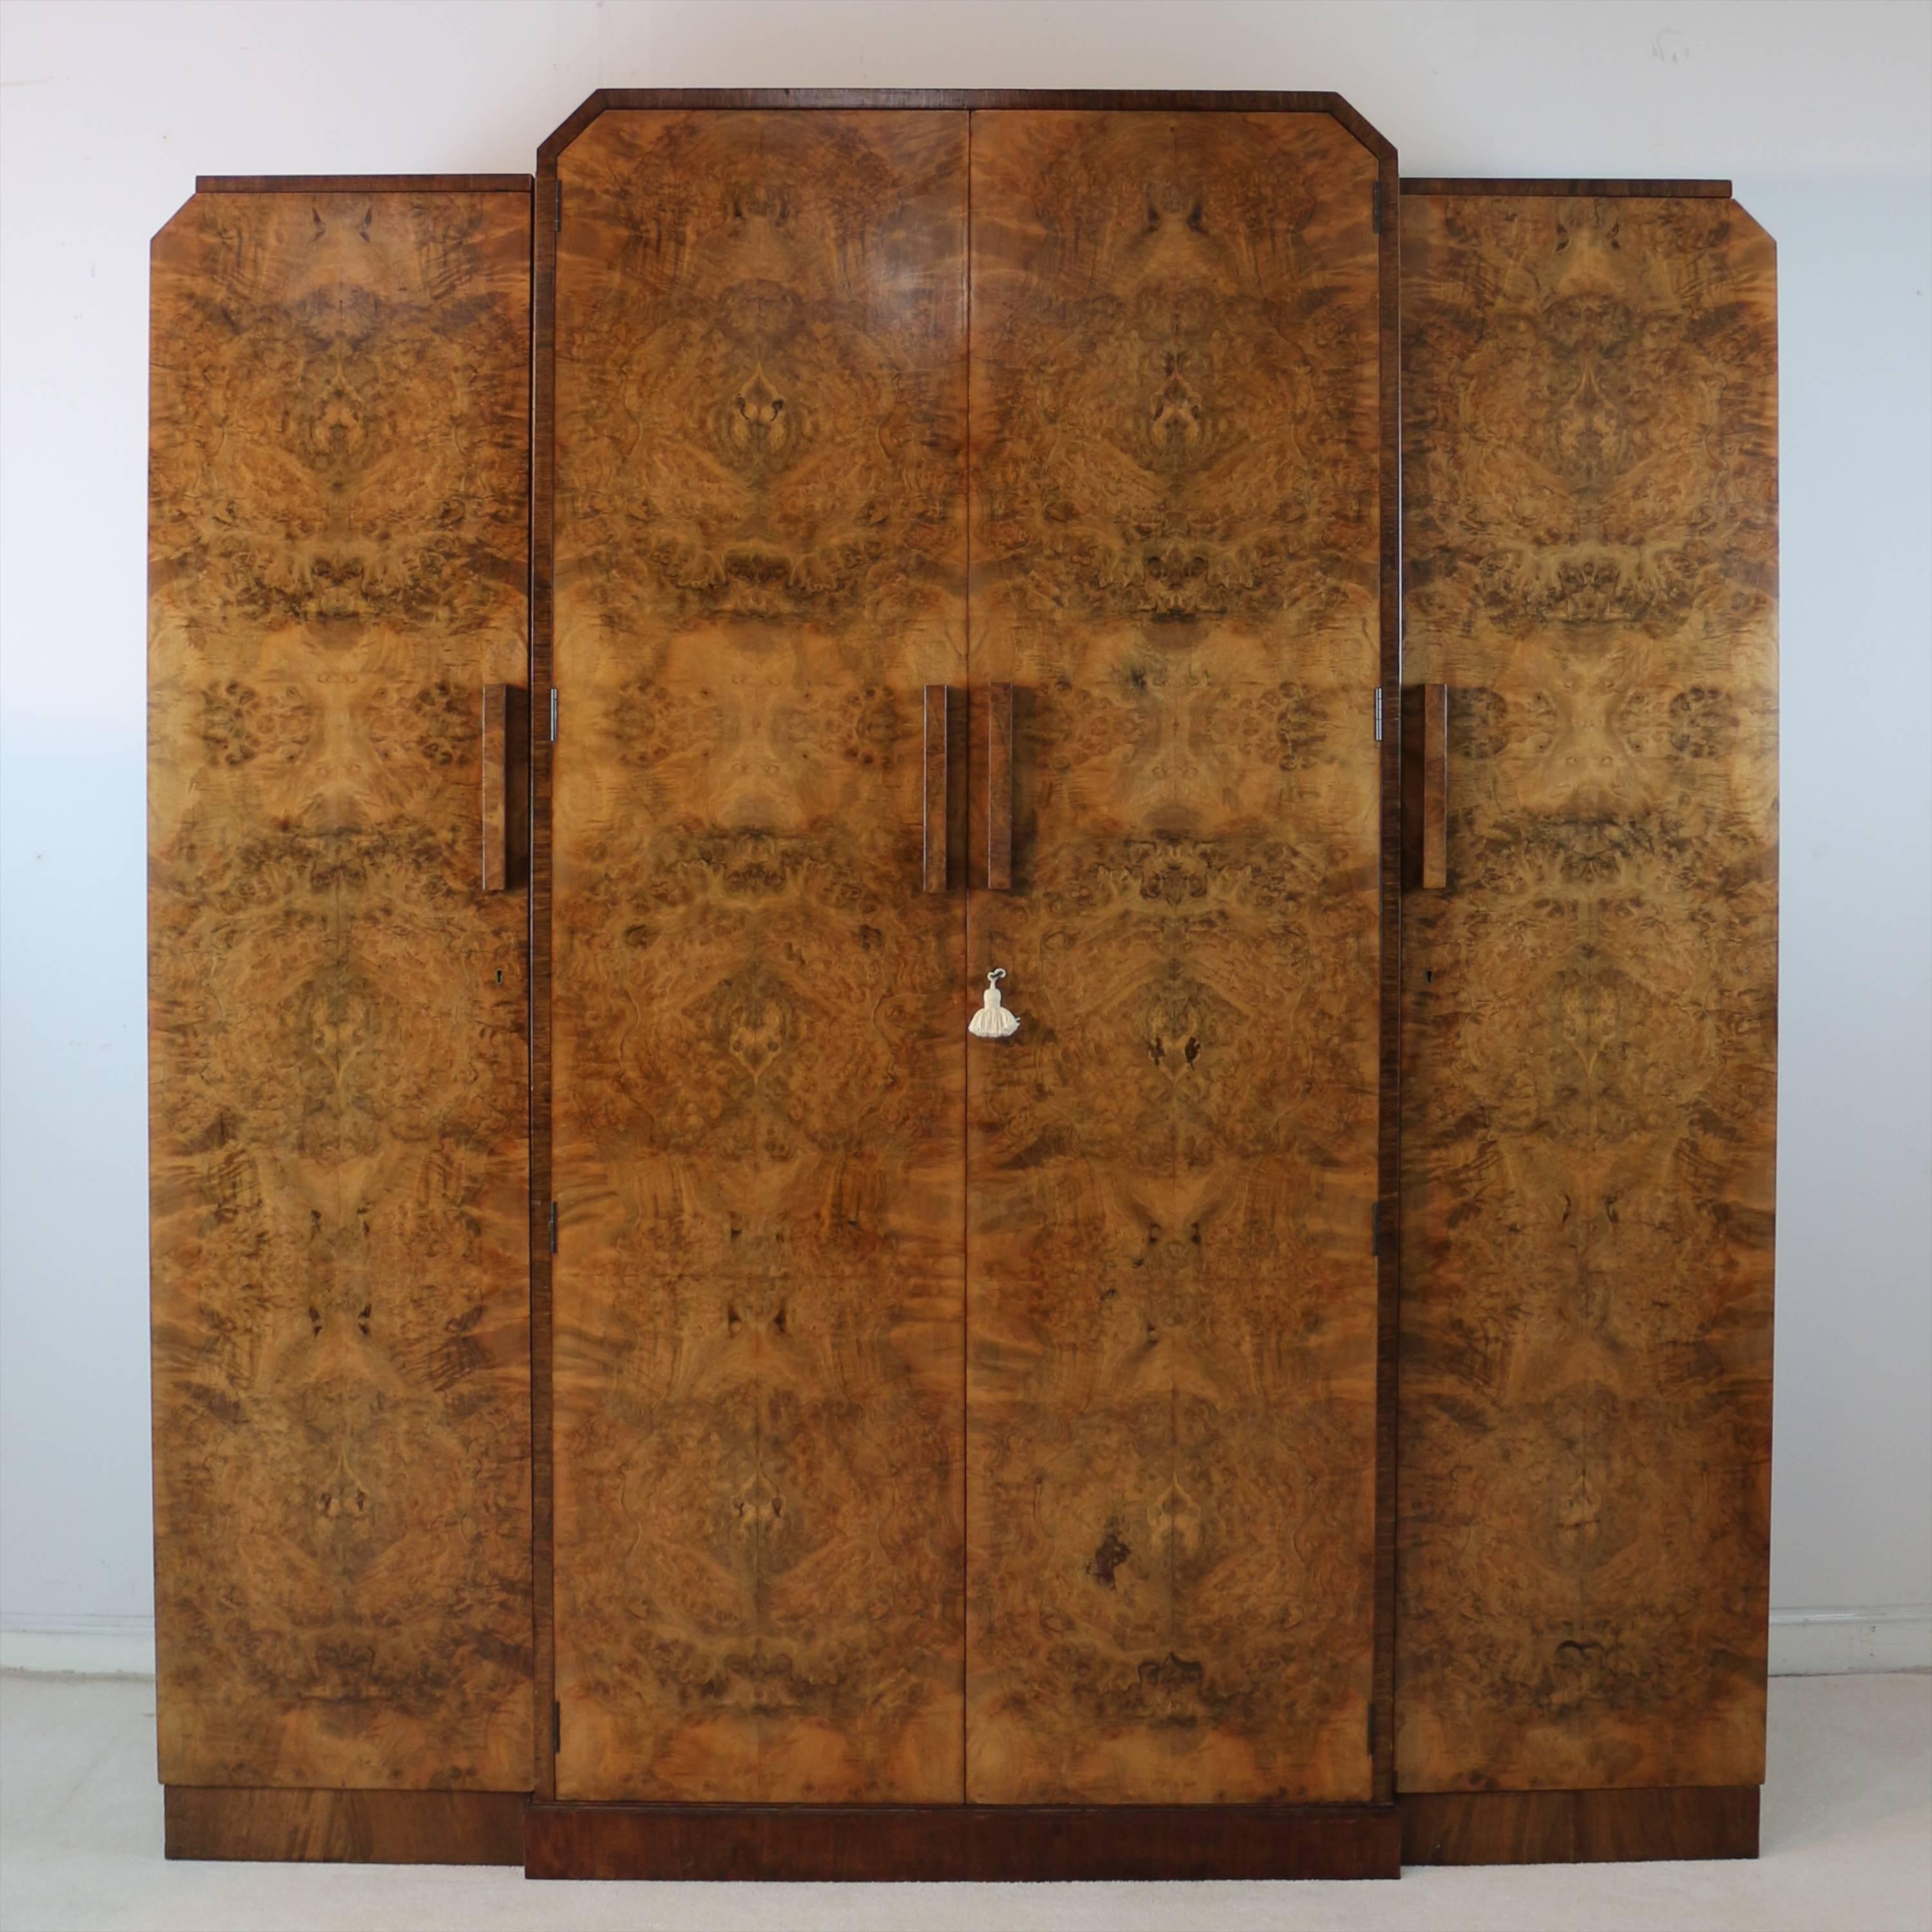 Eine vierteilige englische Art-Déco-Schlafzimmergarnitur aus Wurzelholz und Palisander mit Querbändern, die H & L Epstein zugeschrieben wird und aus der Zeit um 1925 stammt. Er ist typisch stilvoll und von hervorragender Qualität:

Ein viertüriger